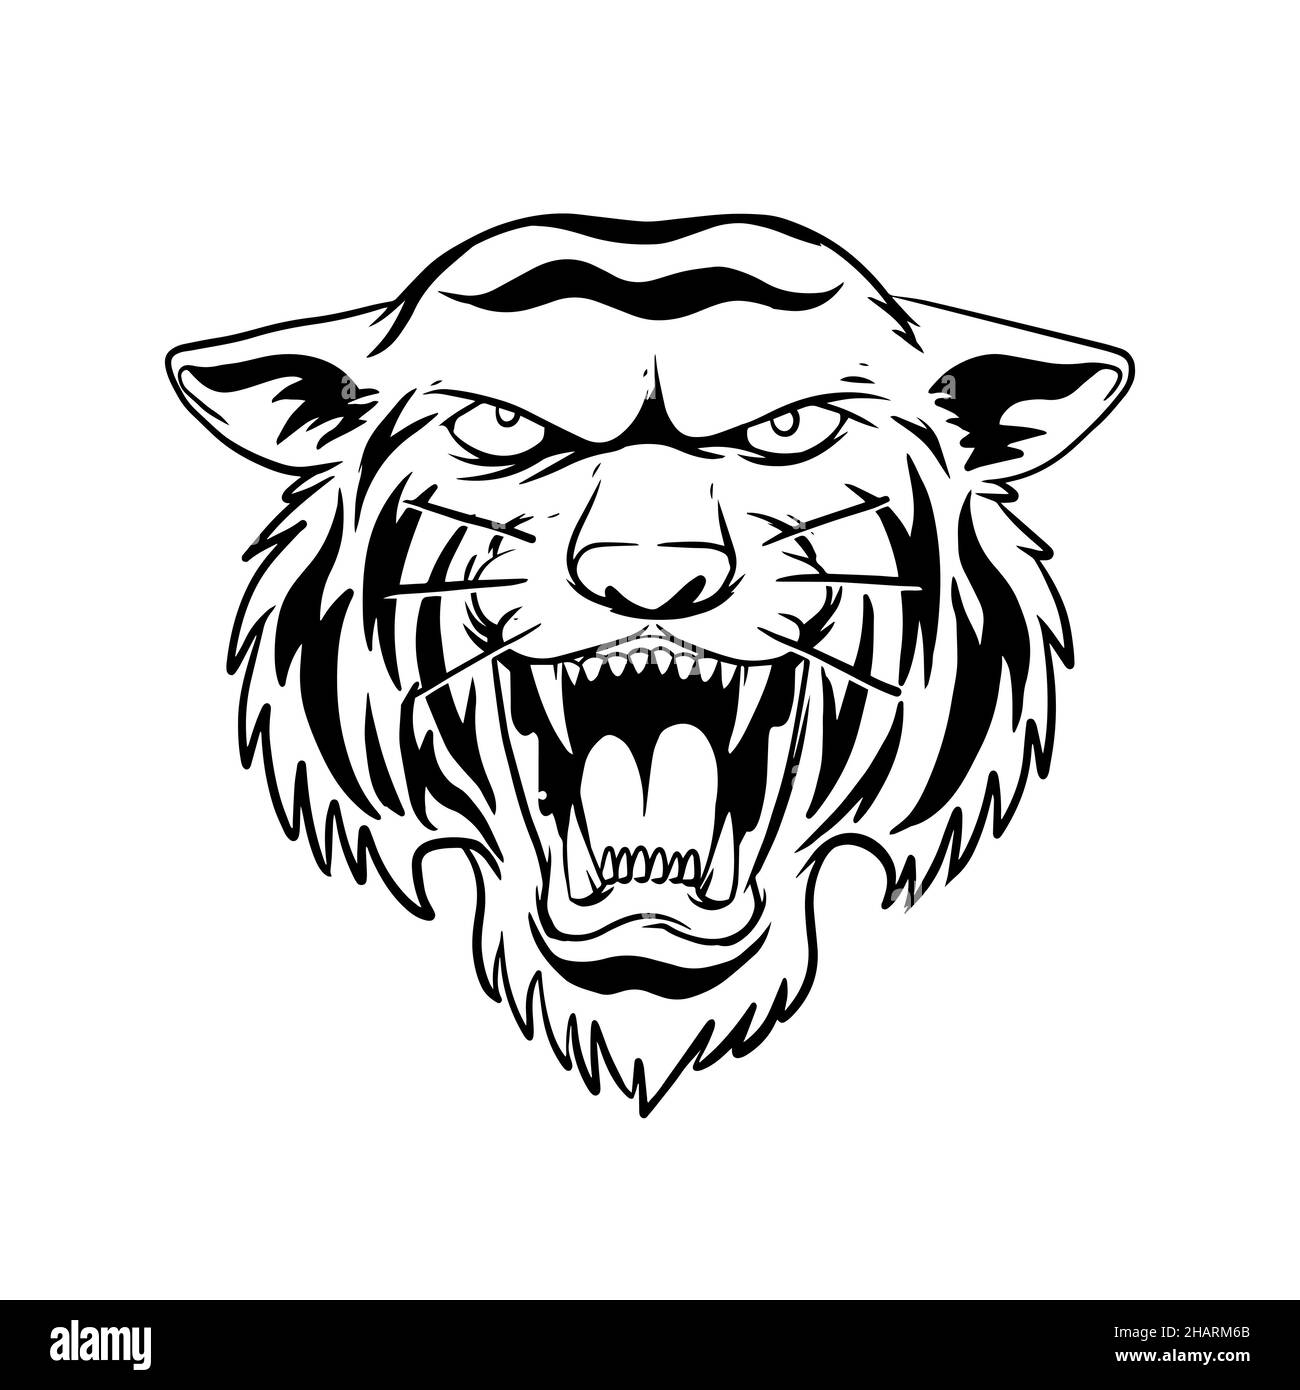 una tigre che growling. un disegno disegnato a mano di una testa animale selvaggia. disegno di arte di linea per emblema, poster, adesivo, tatuaggio, ecc. Foto Stock